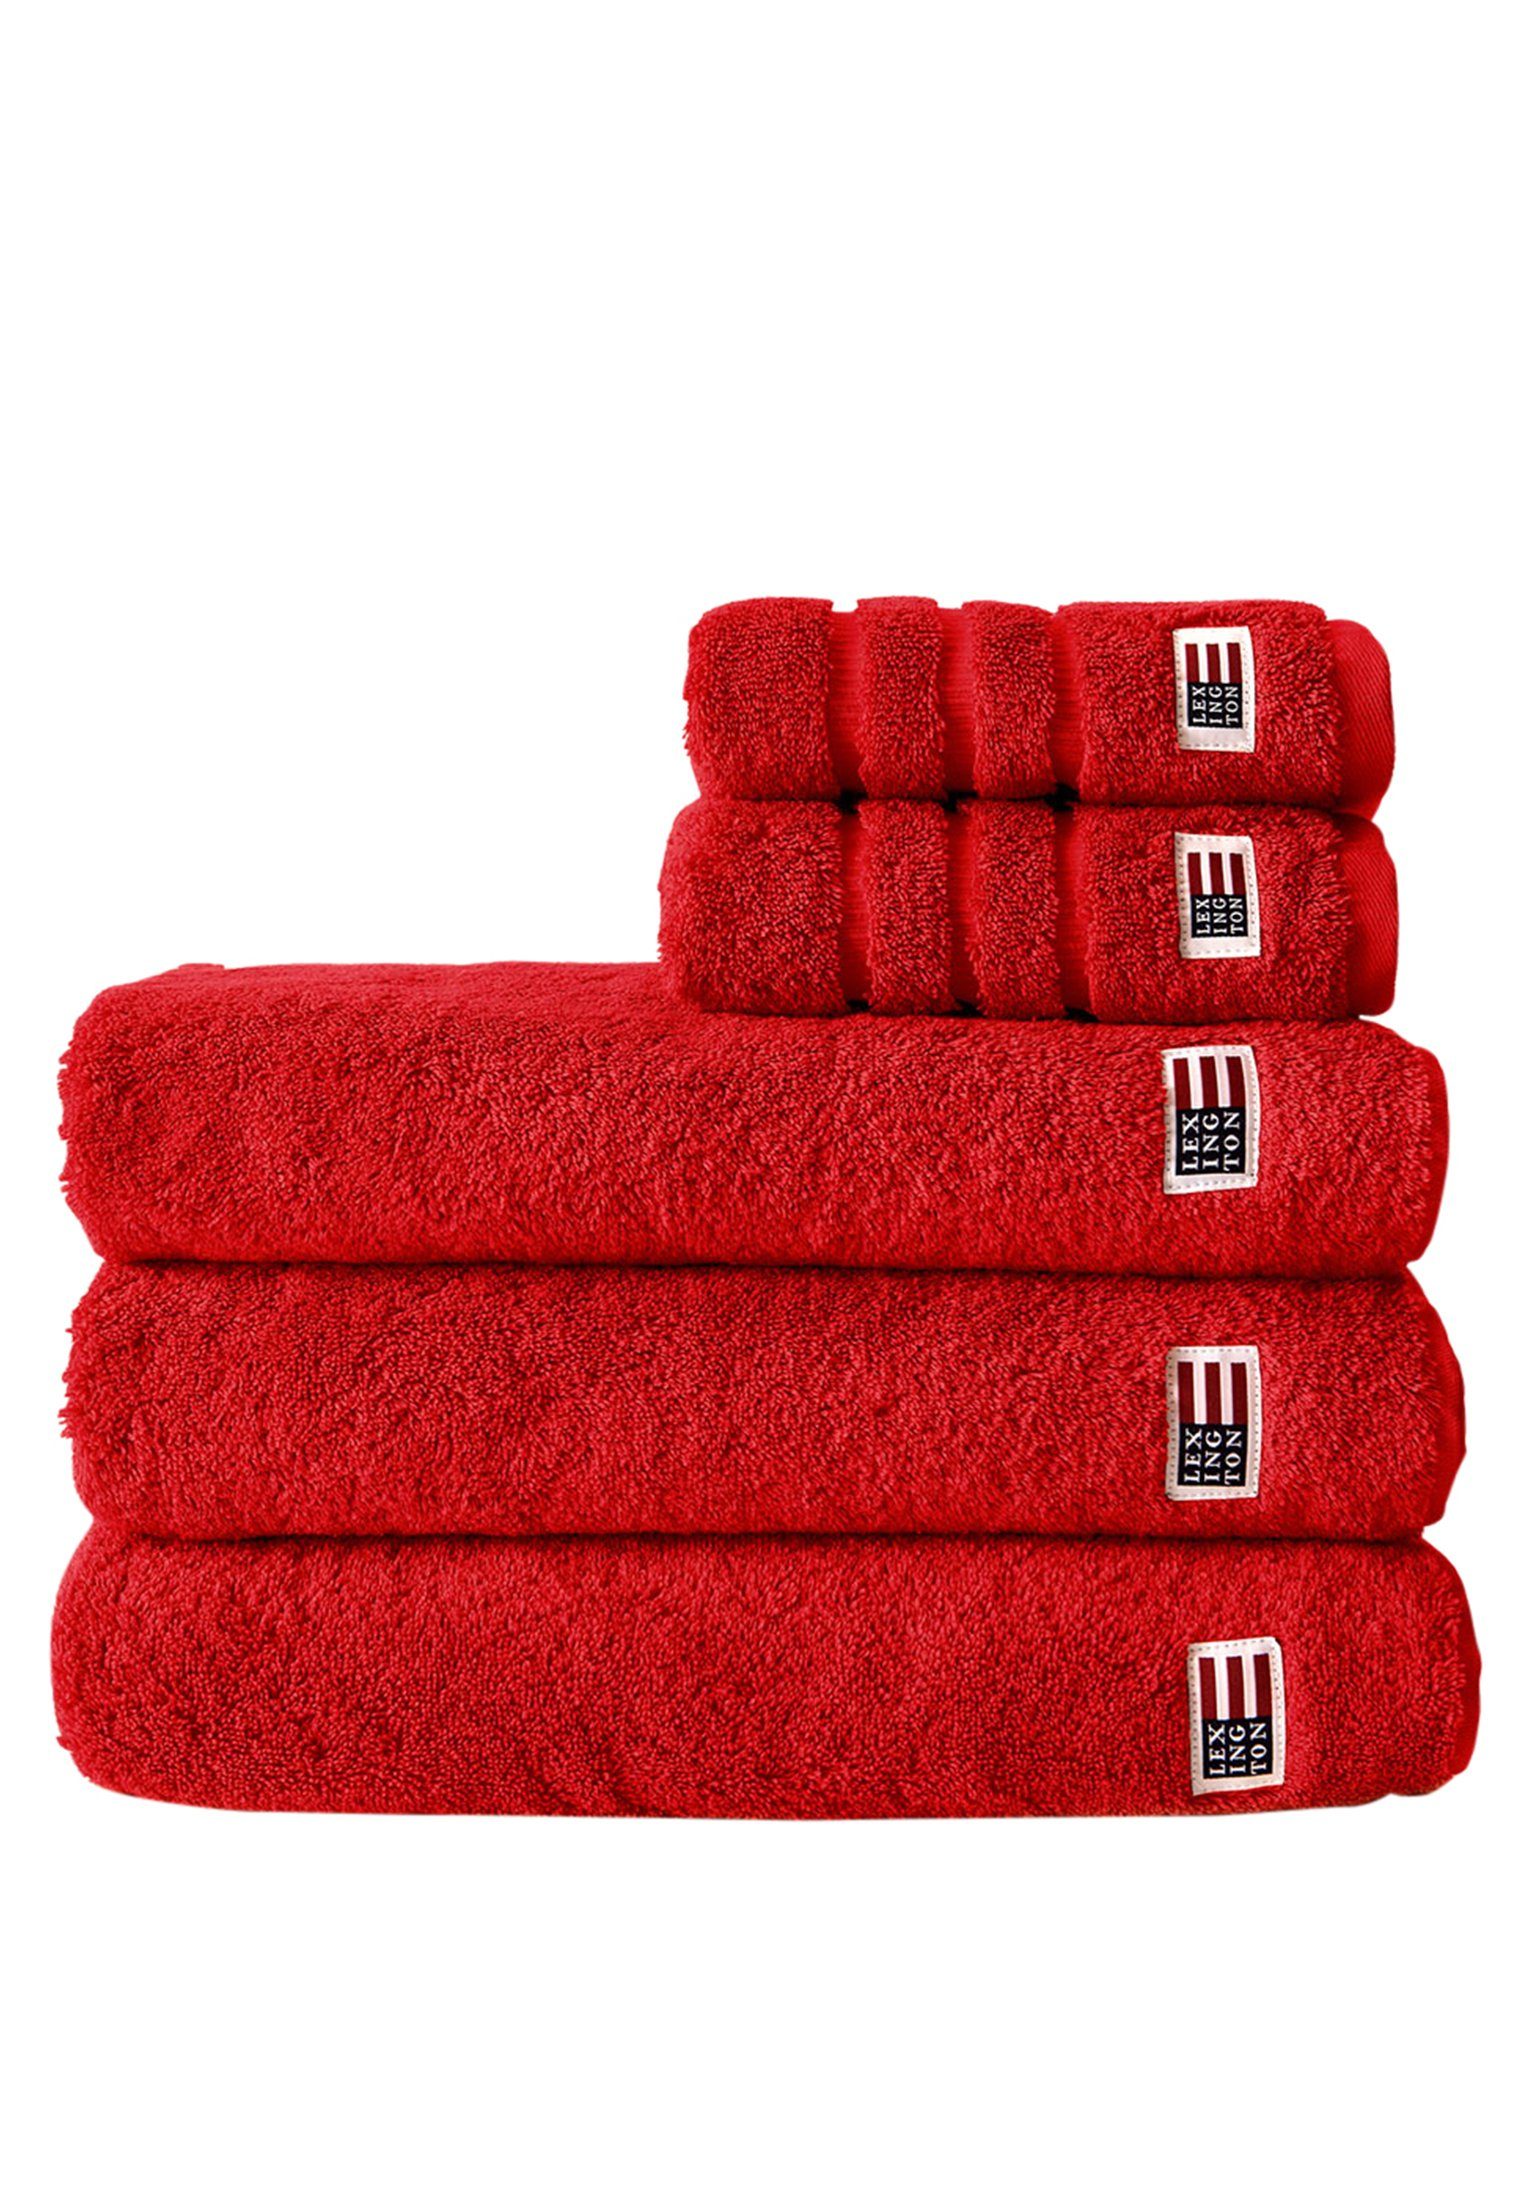 Lexington Handtuch Original Towel red | Alle Handtücher